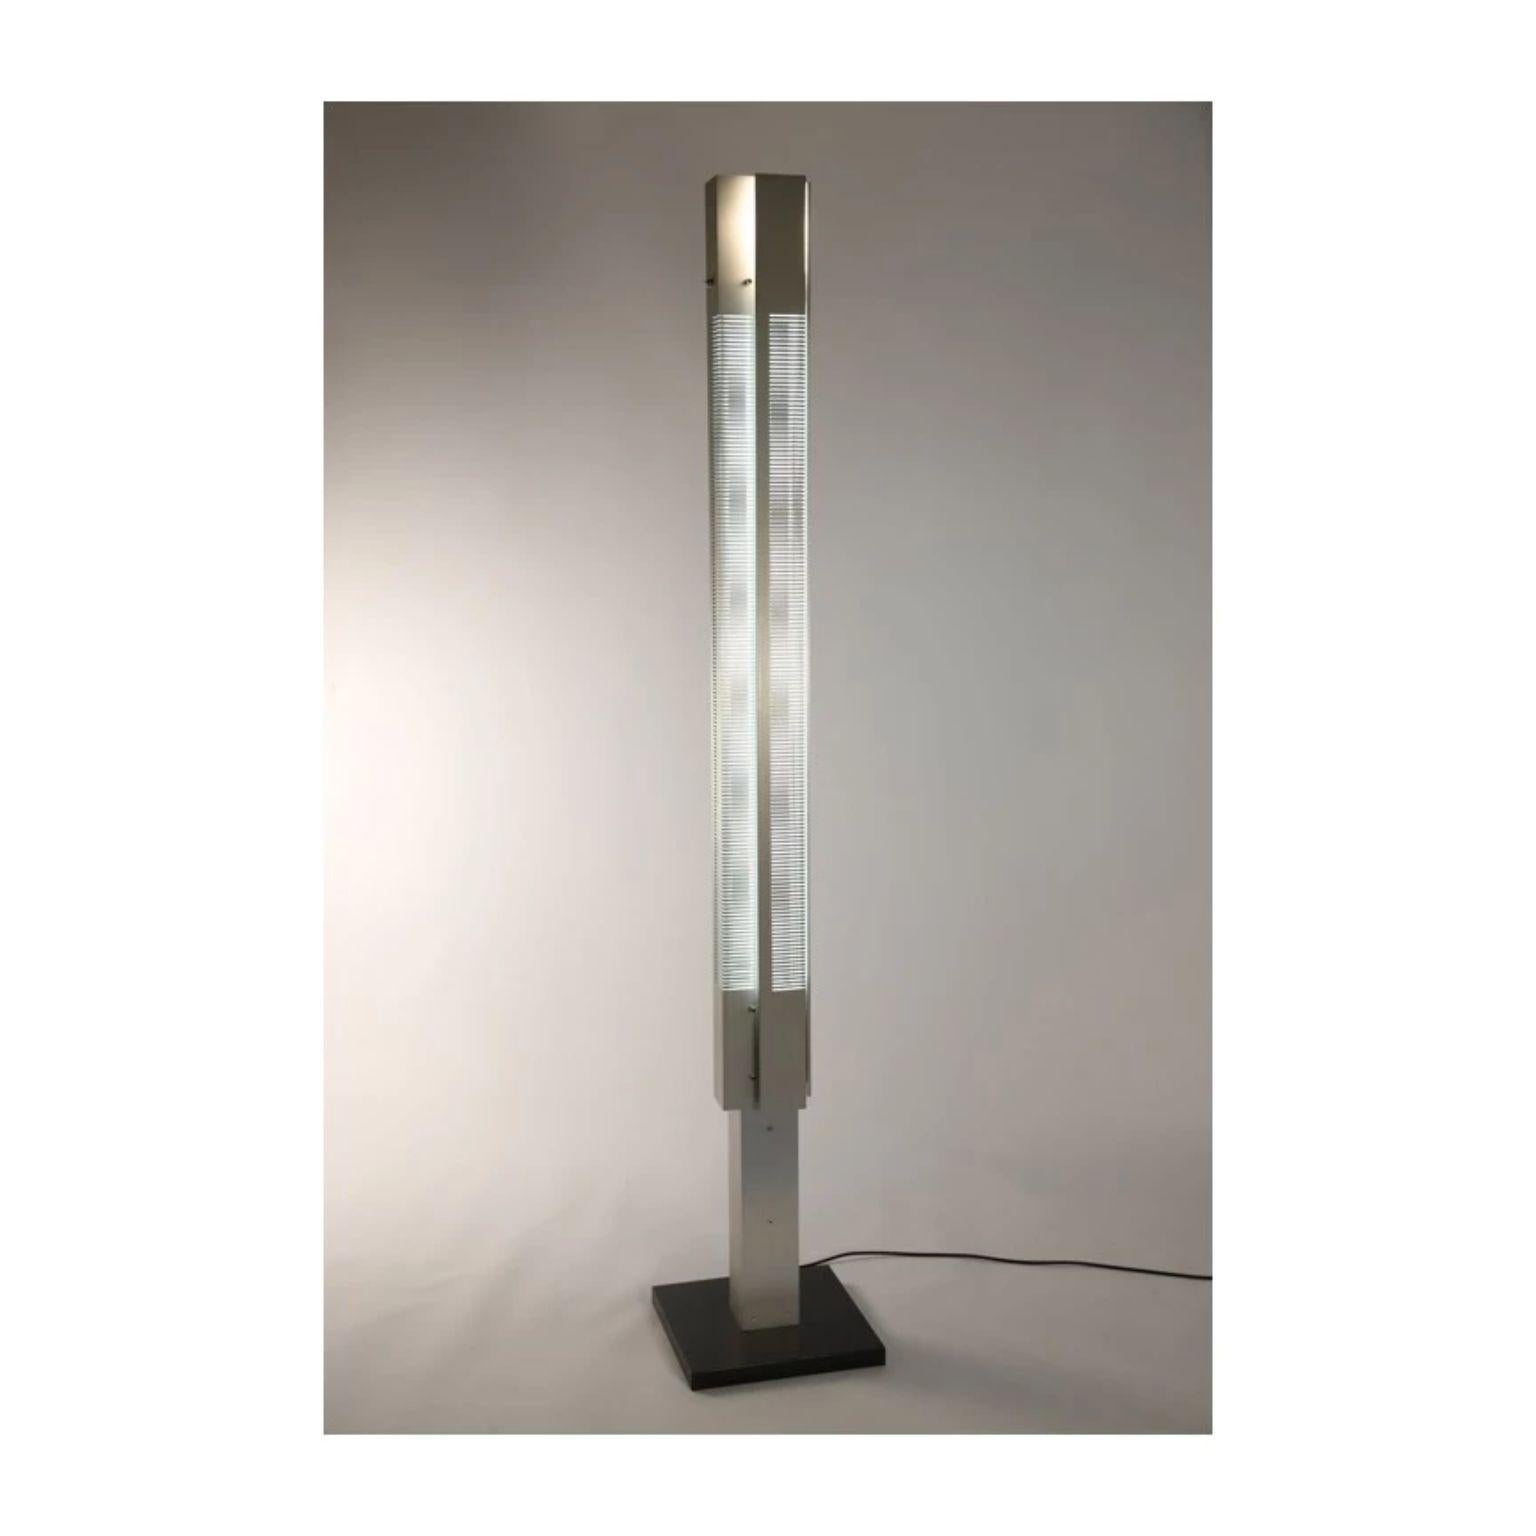 Lampe à colonne signal petite par Serge Mouille
Dimensions : D 16 x H 108 cm
Matériaux : Aluminium
L'un des rois. Numéroté.
Egalement disponible dans d'autres couleurs et dimensions.

Toutes nos lampes peuvent être câblées en fonction de chaque